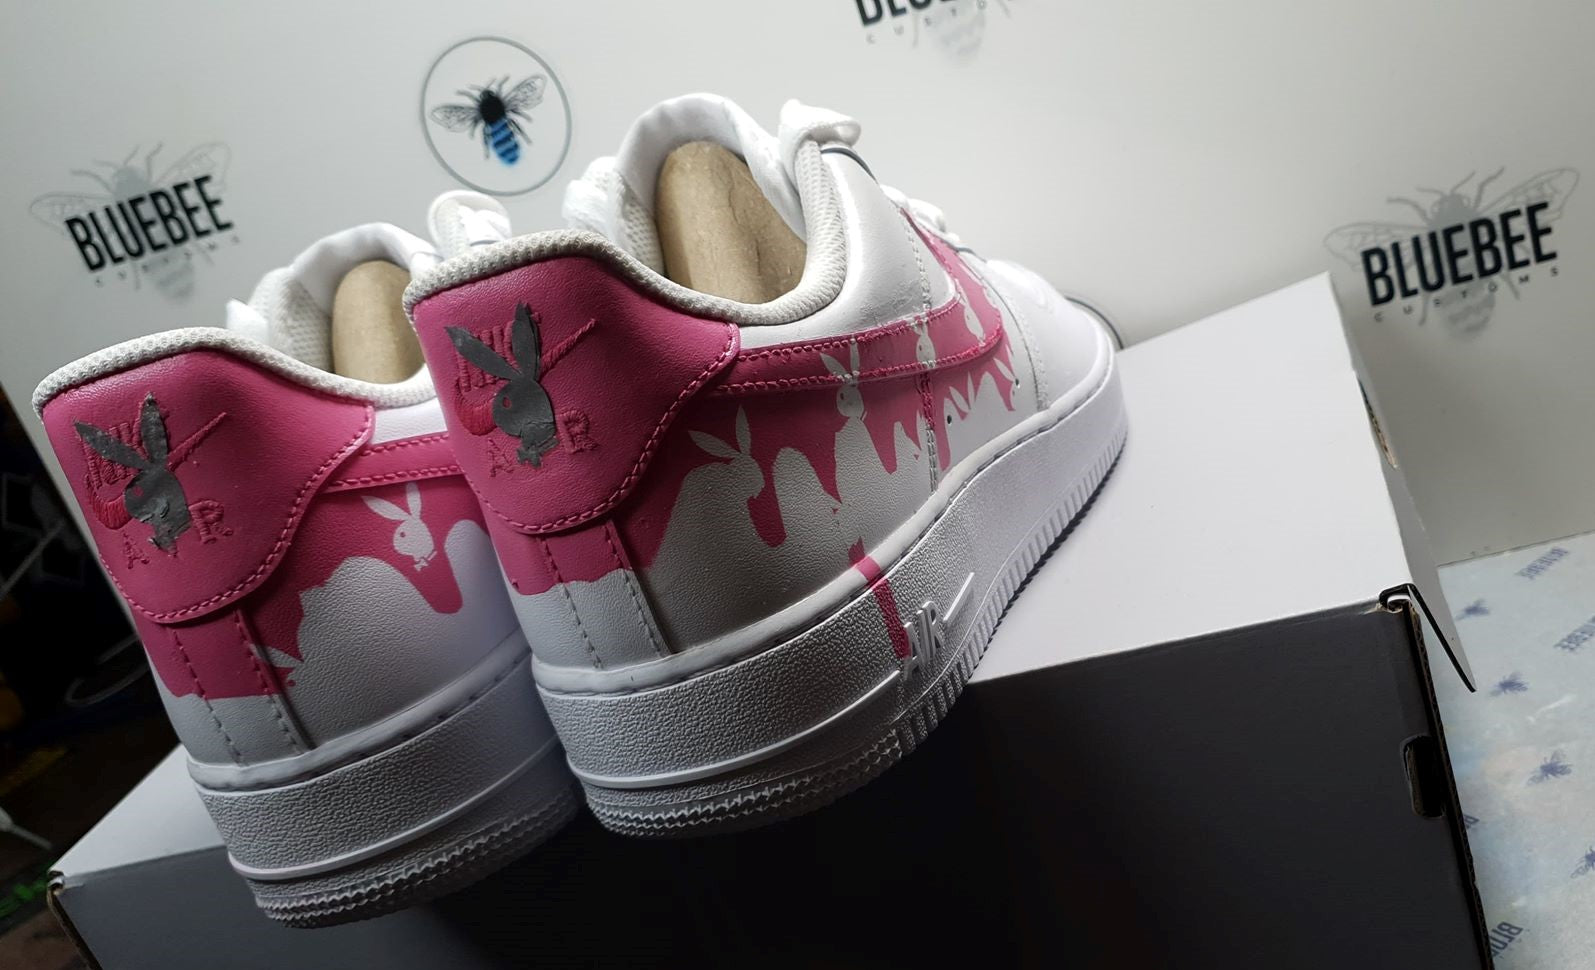 Nike Air Force 1 pink Drip custom – Bendita Customs